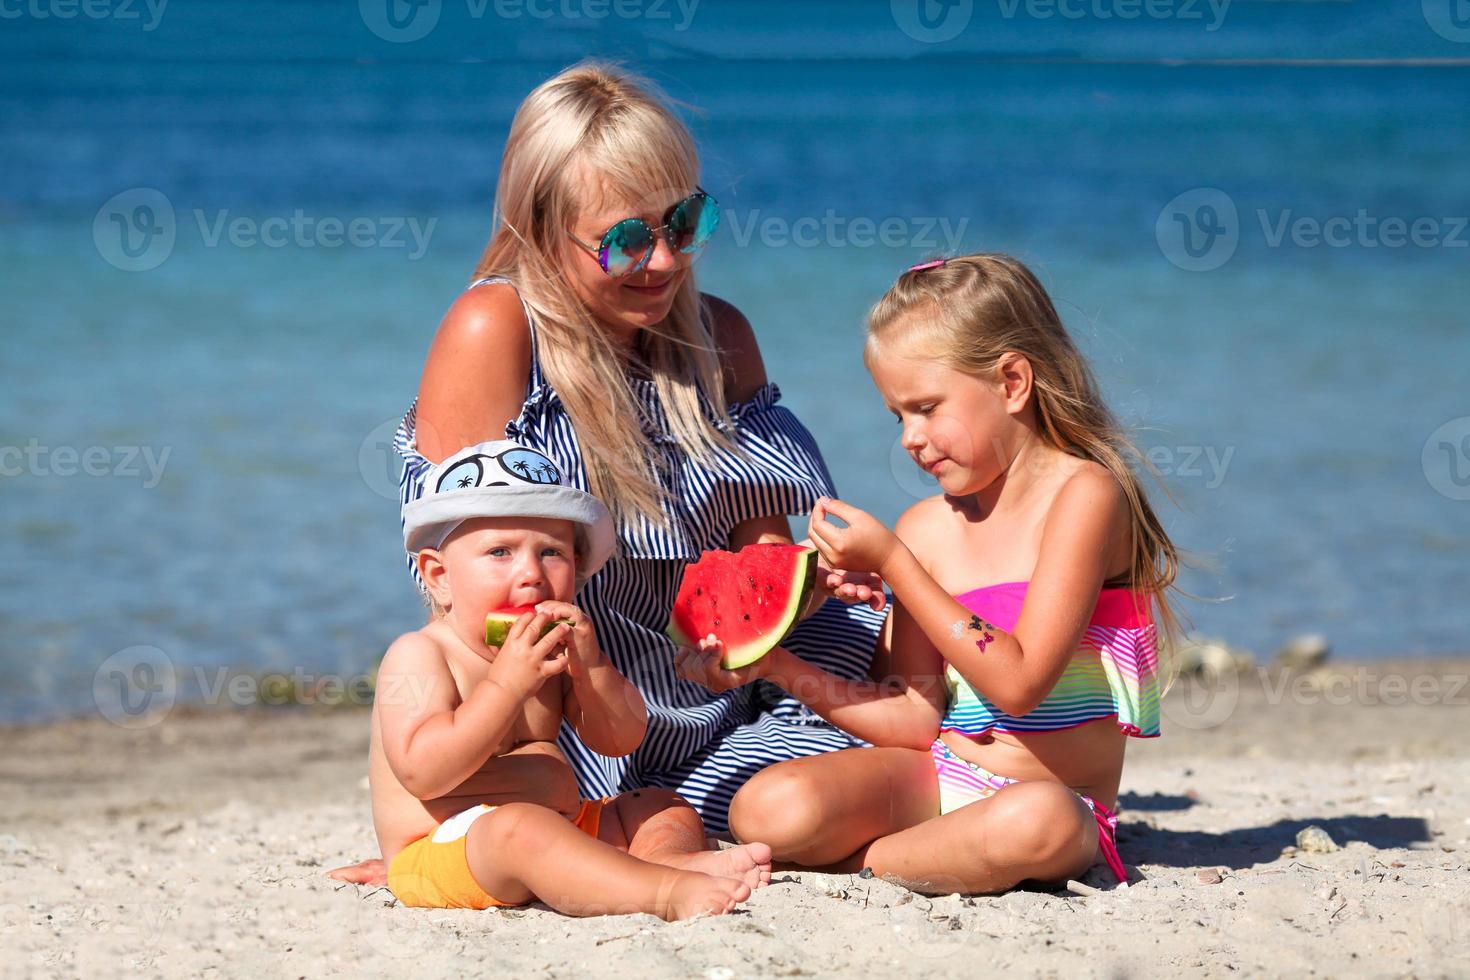 Mama und Kinder sind Sitzung auf das Strand in der Nähe von das Meer und Essen Wassermelone. Urlaub. foto